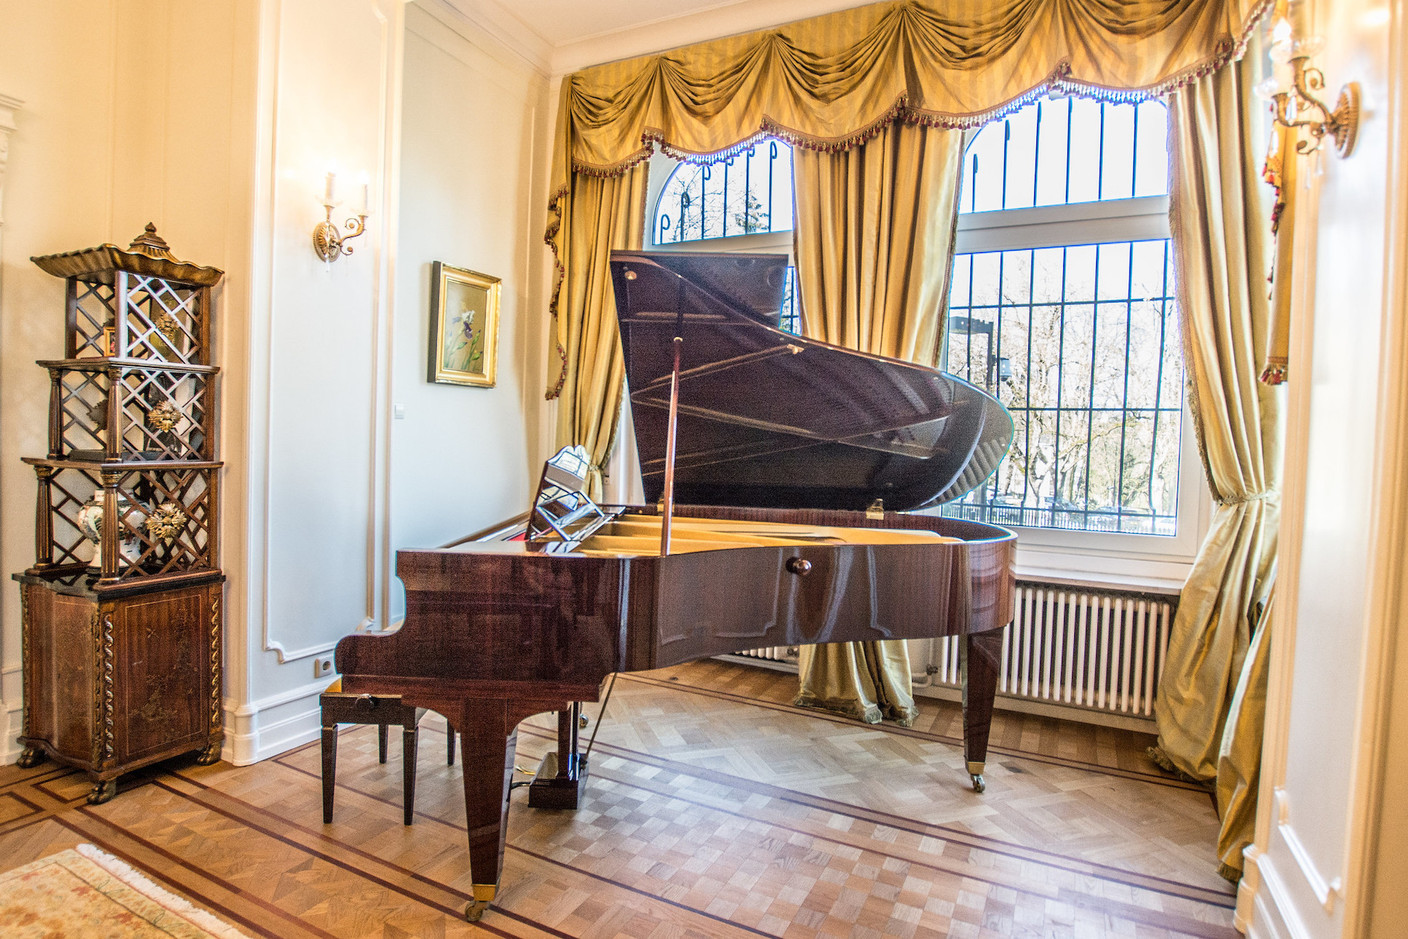 Le piano de la résidence.  Ambassade des États-Unis au Luxembourg